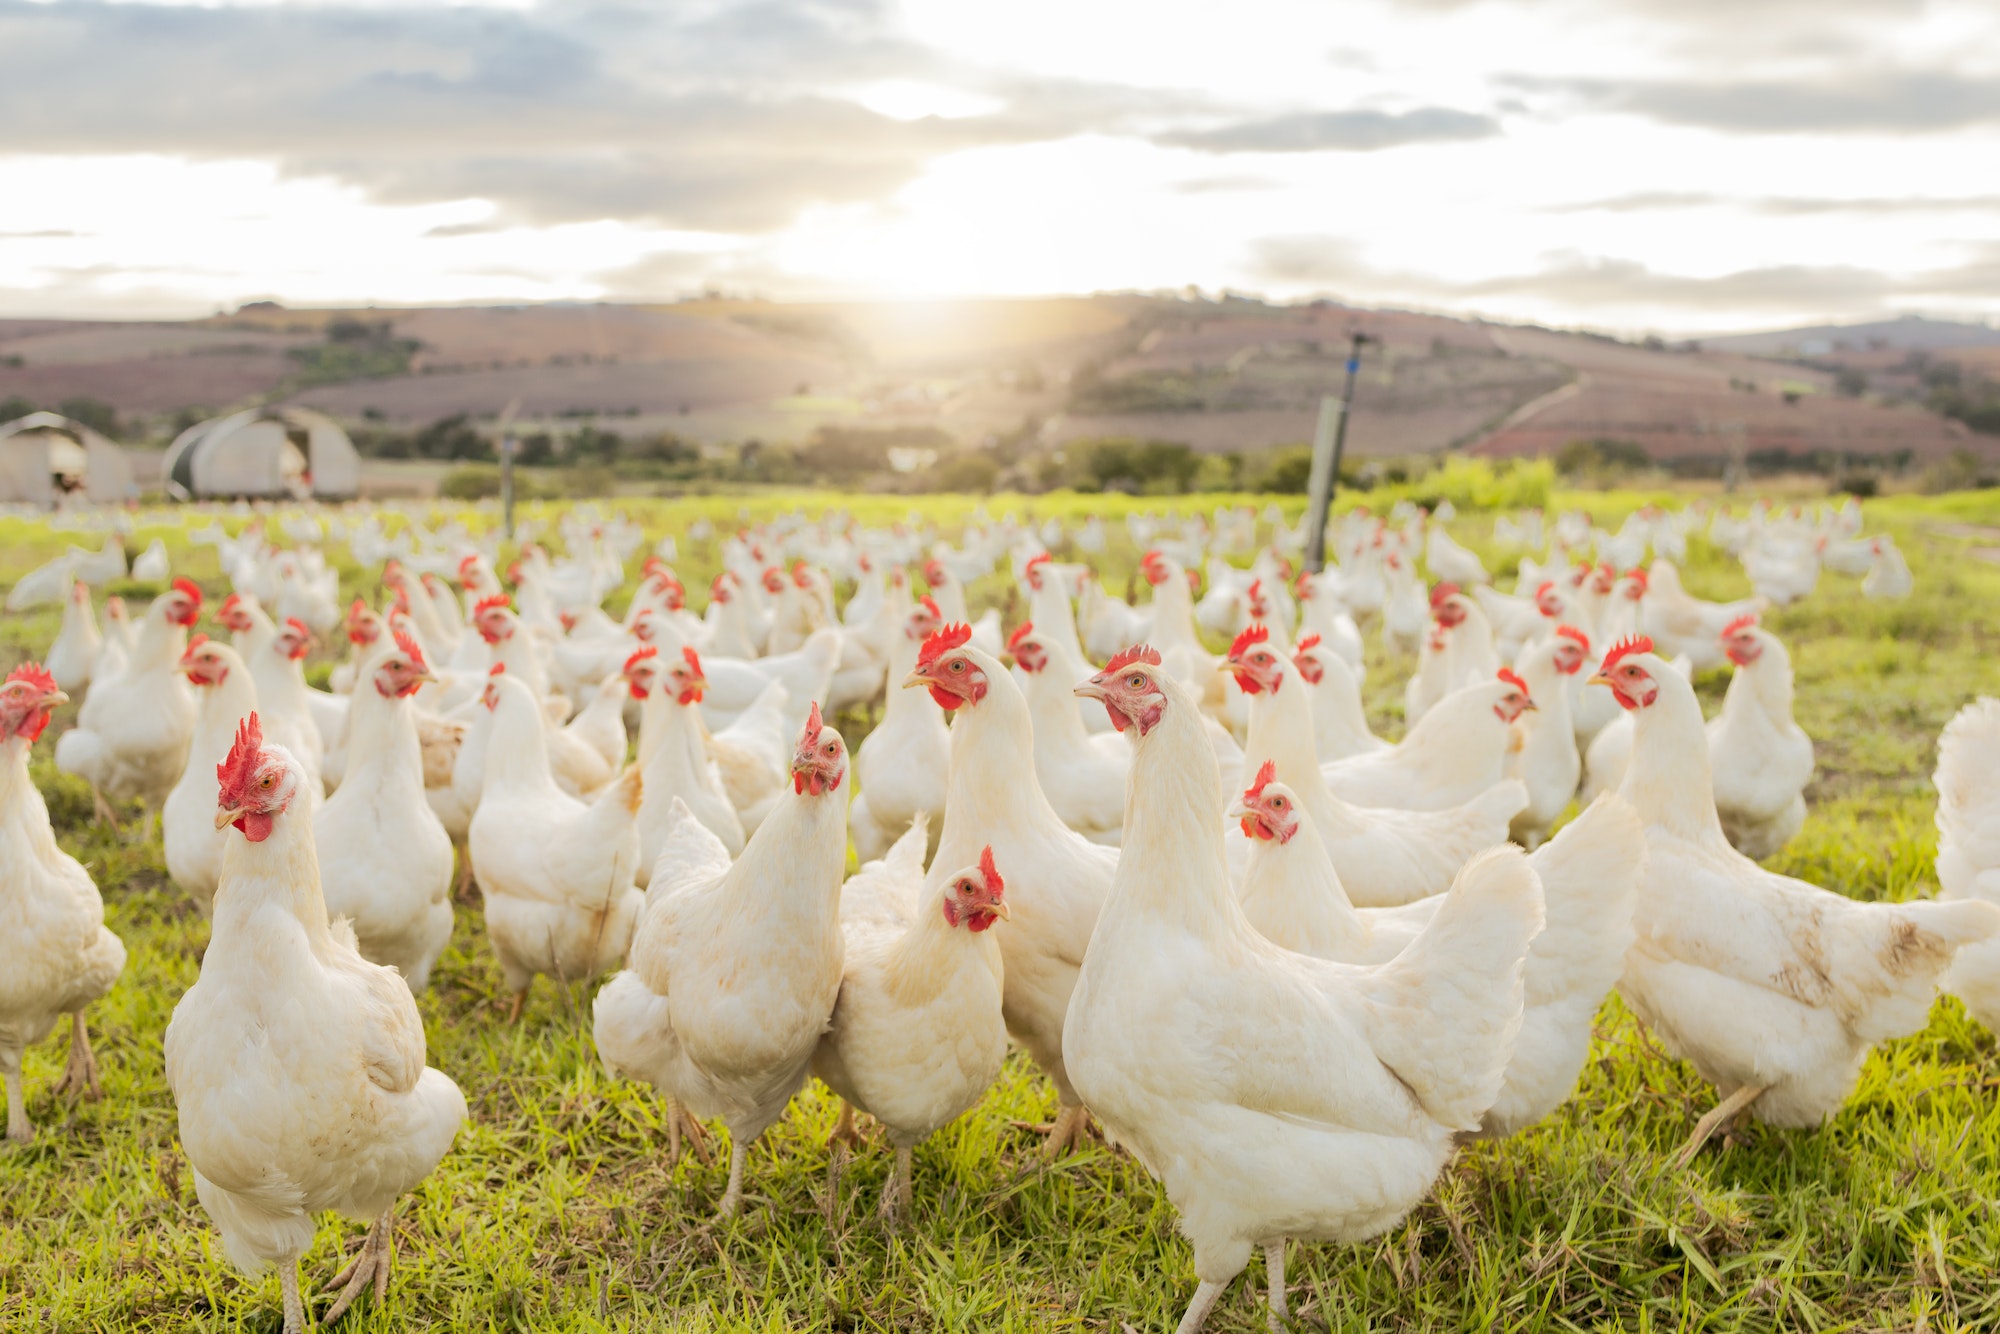 Granja, sostenibilidad y rebaño de pollos en granja para agricultura ecológica, avicultura y ganadería. Lente fla